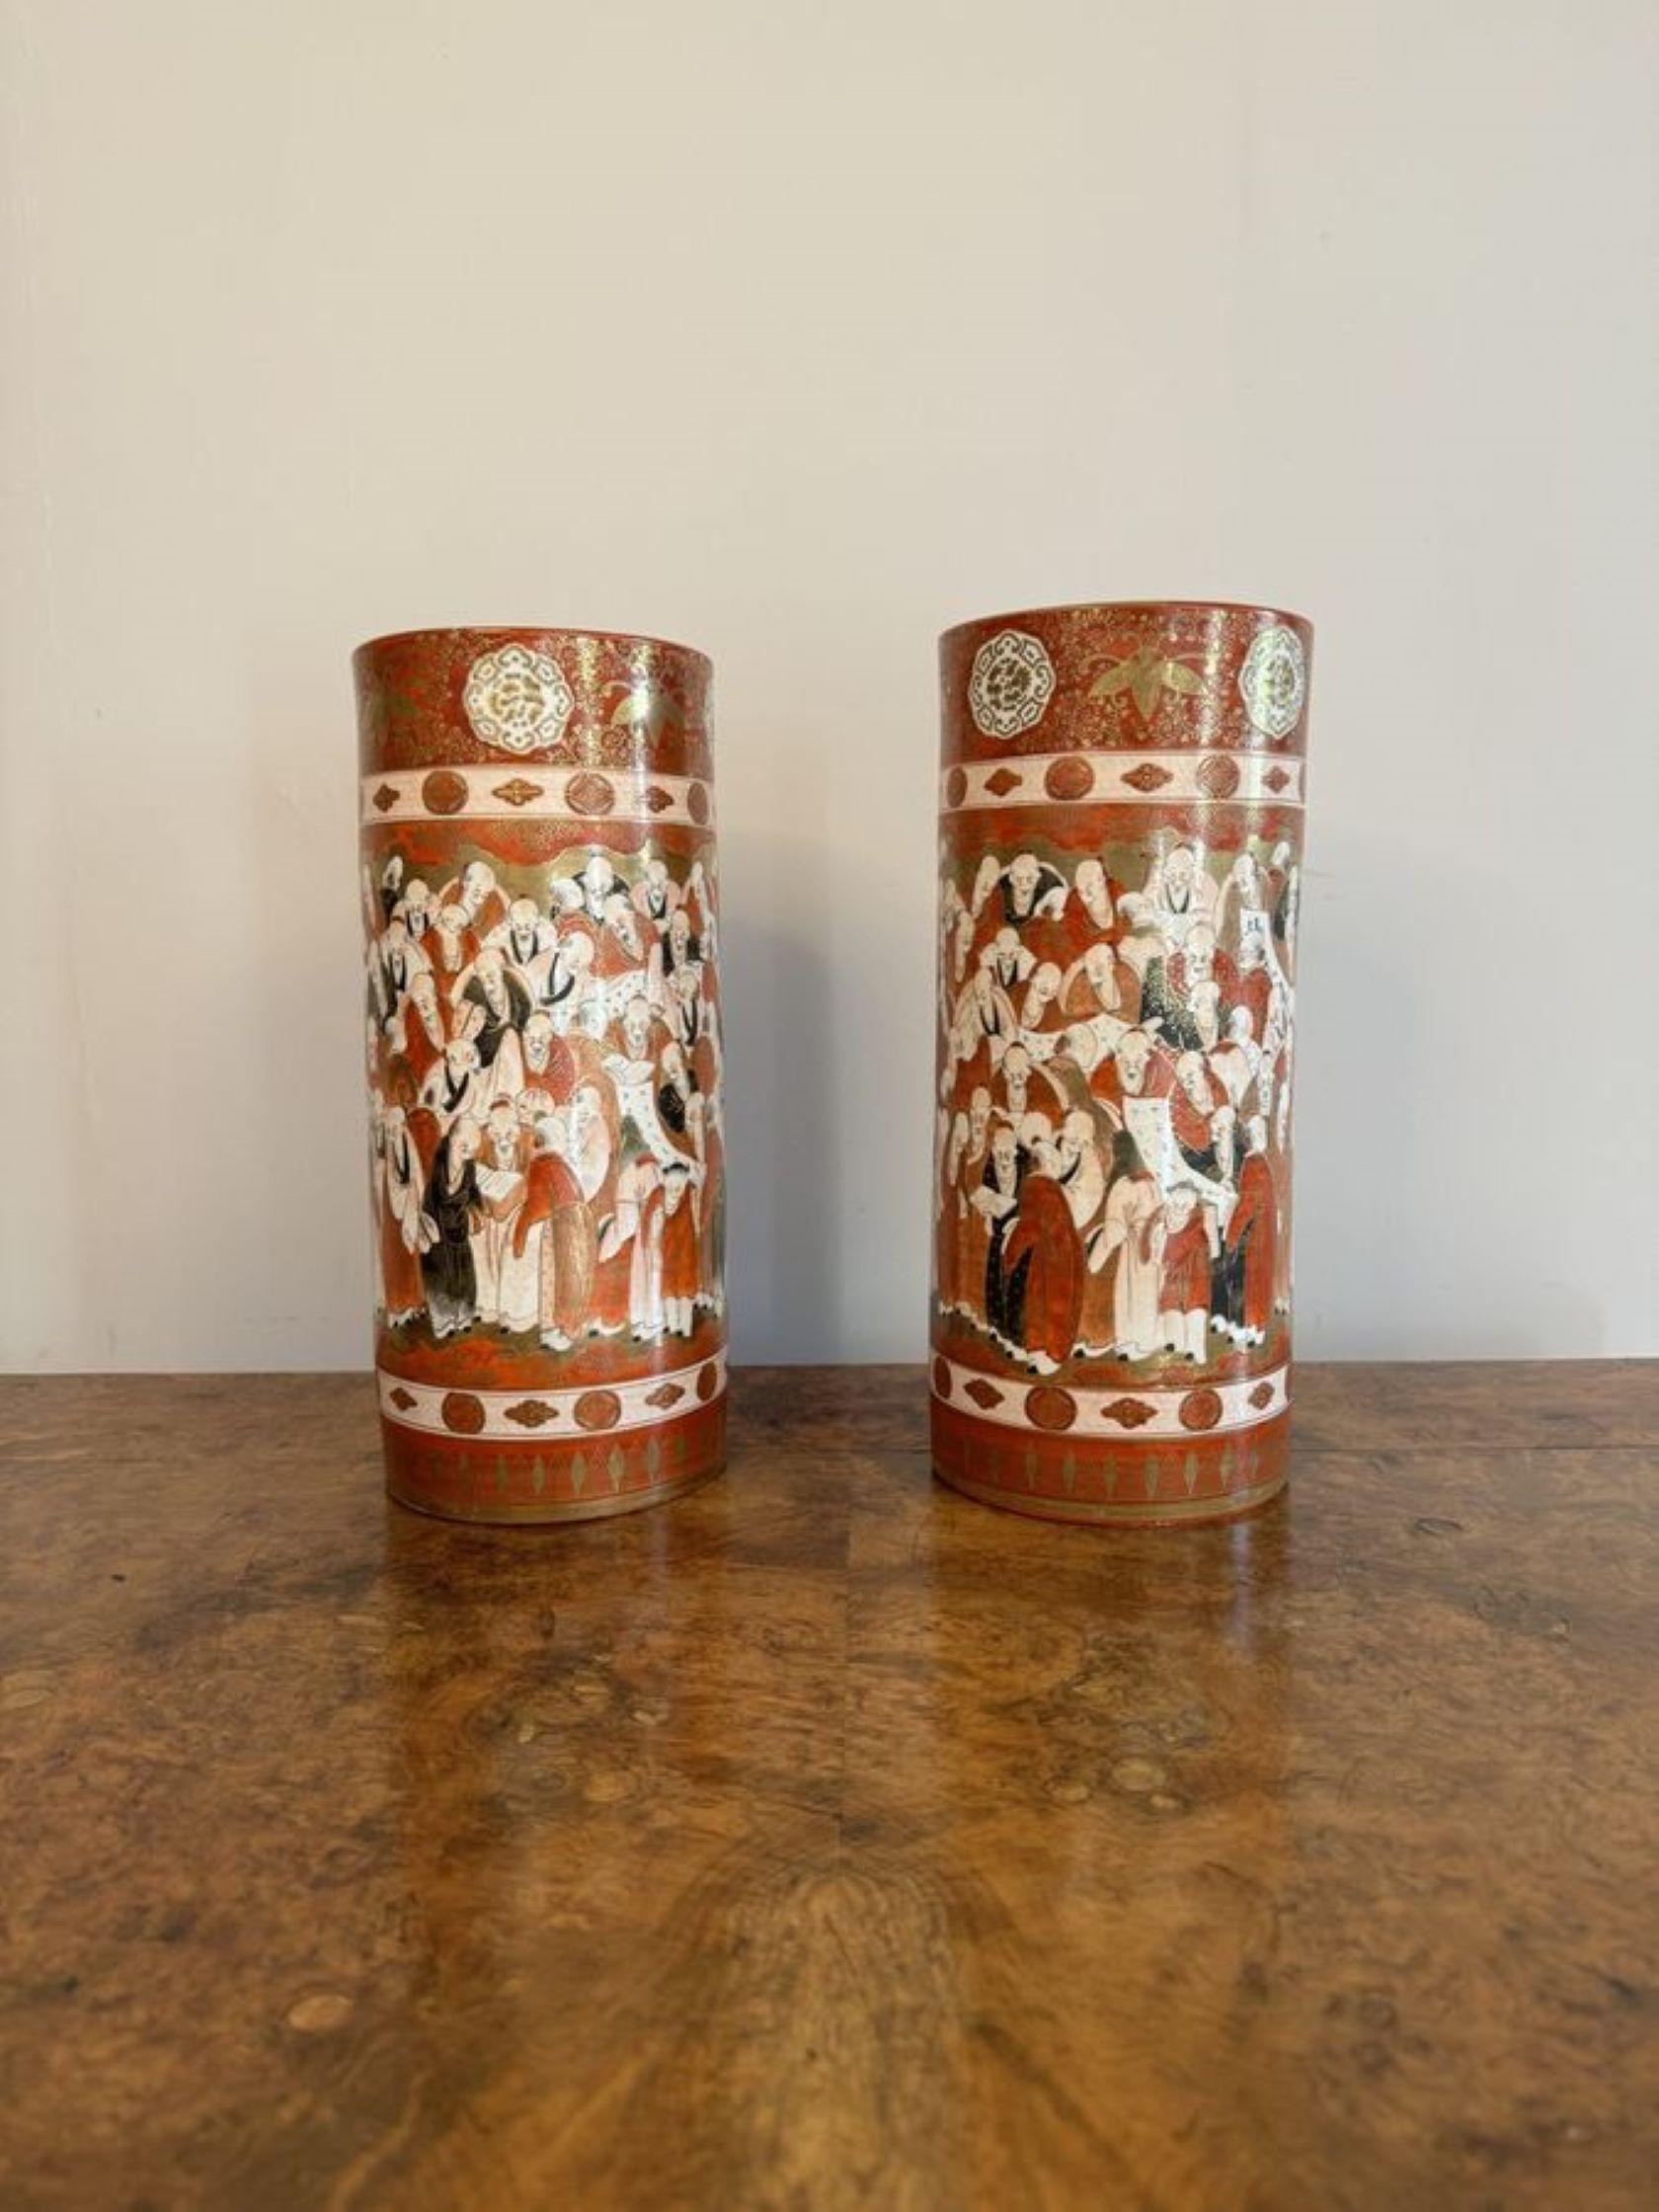 Exceptionnelle paire de vases cylindriques japonais Kutani du XIXe siècle. Paire de vases cylindriques anciens en porcelaine japonaise Kutani de qualité, avec des scènes figuratives japonaises peintes à la main en vêtements d'époque dans de superbes